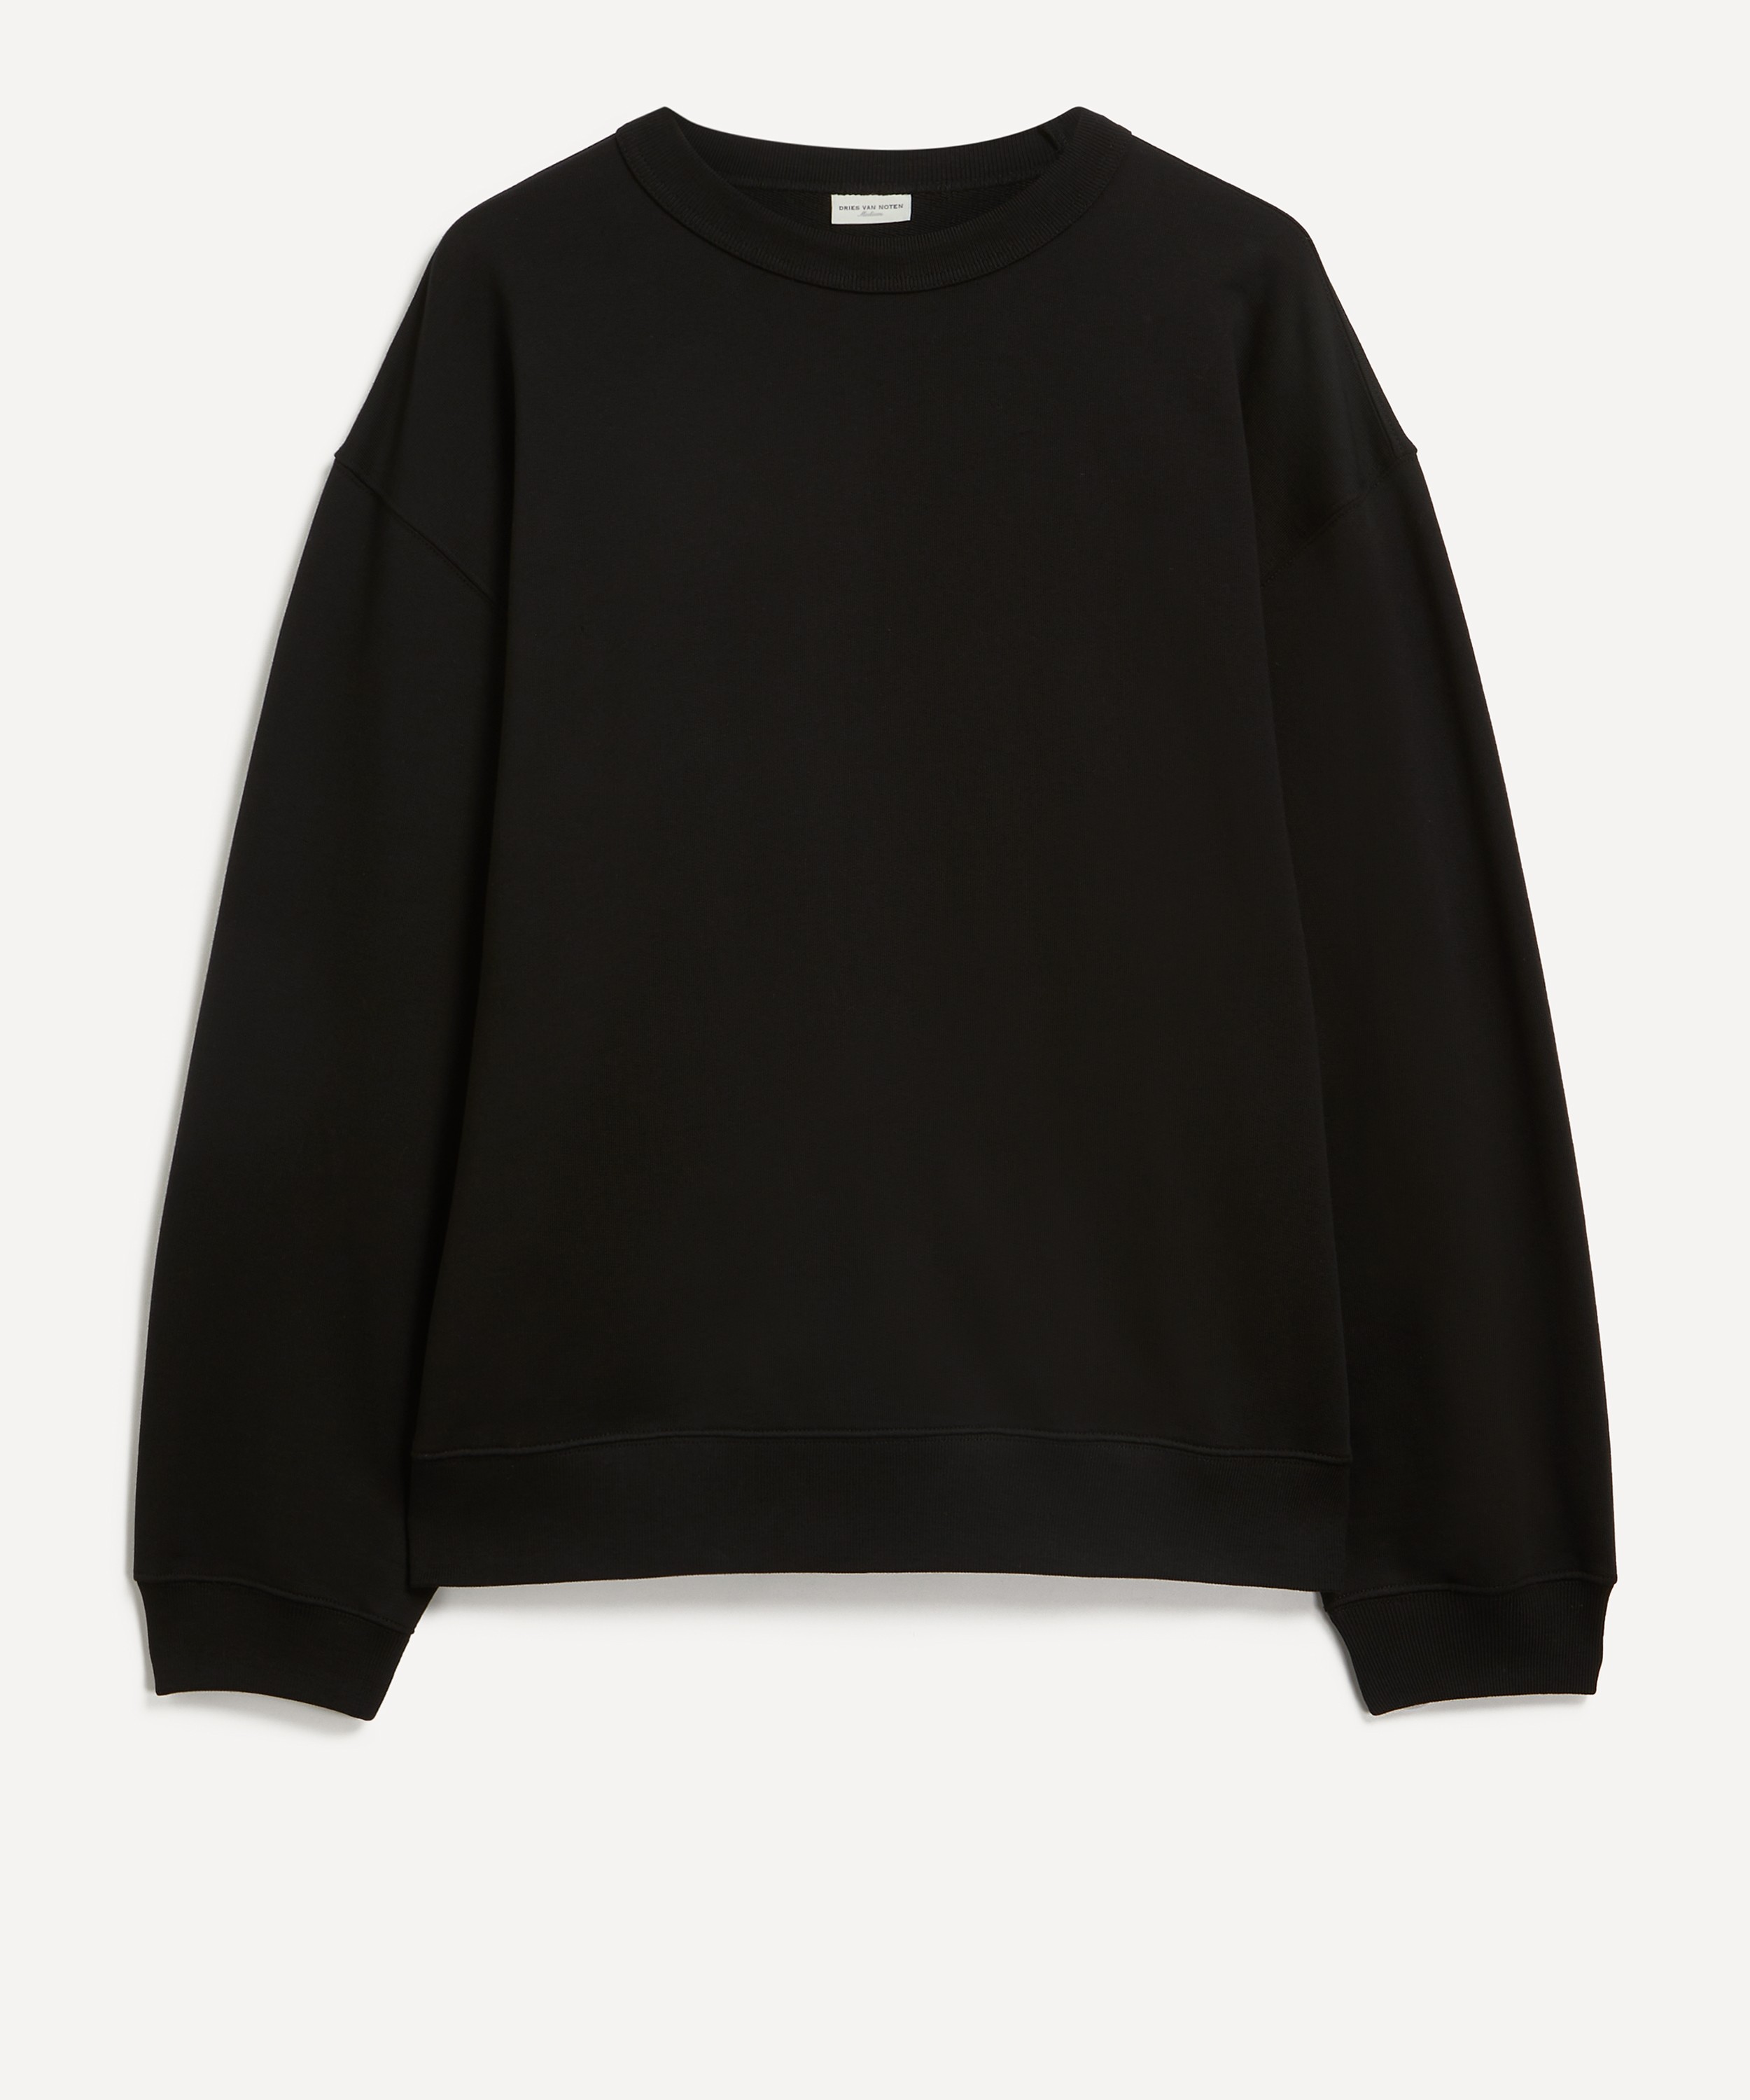 Dries Van Noten - Oversized Sweatshirt